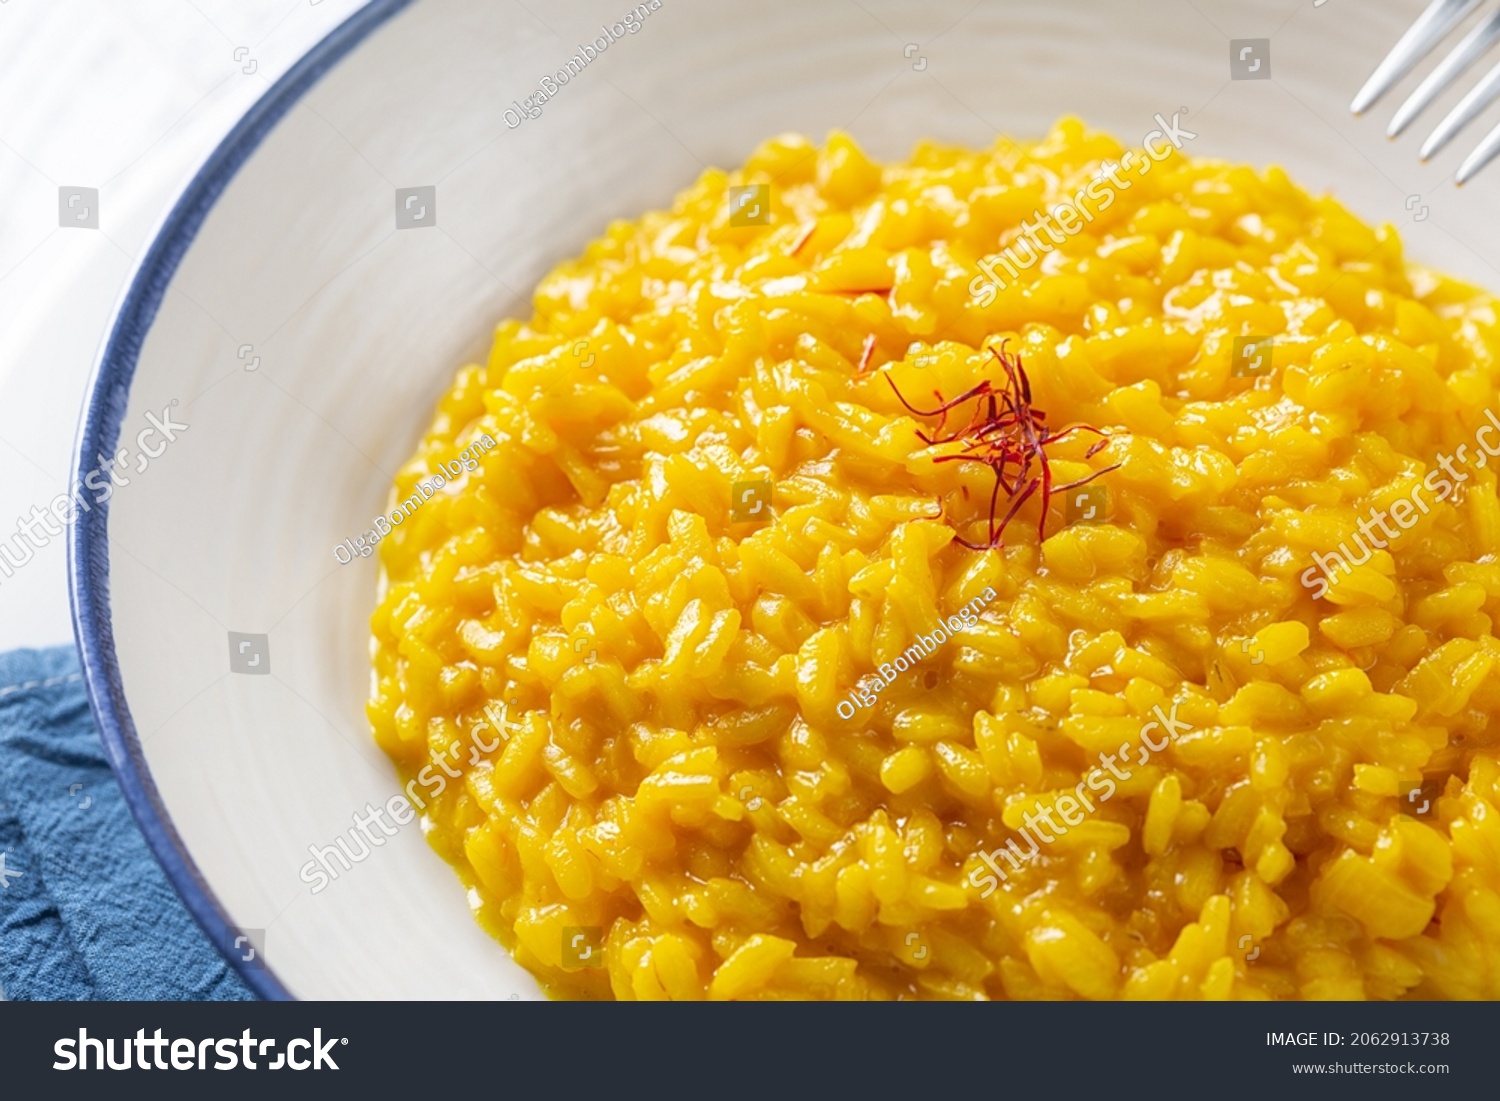 Risotto allo Zafferano. Italian dish made from saffron, rice and vegetable bouillon. Close-up. #2062913738